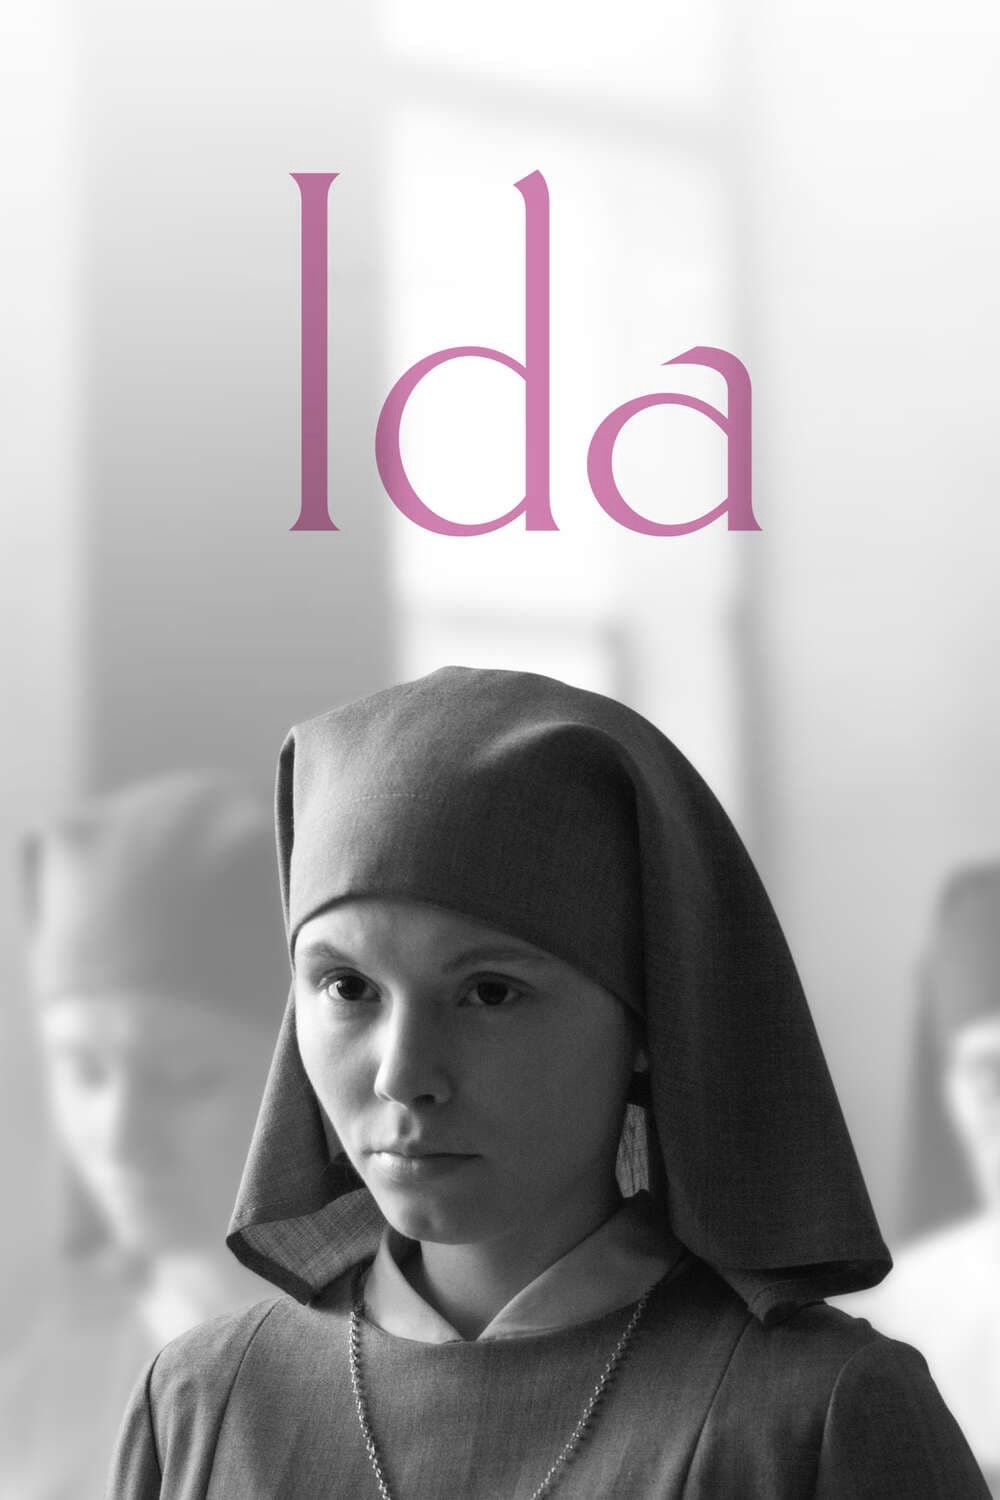 Ida | Ida (2013)